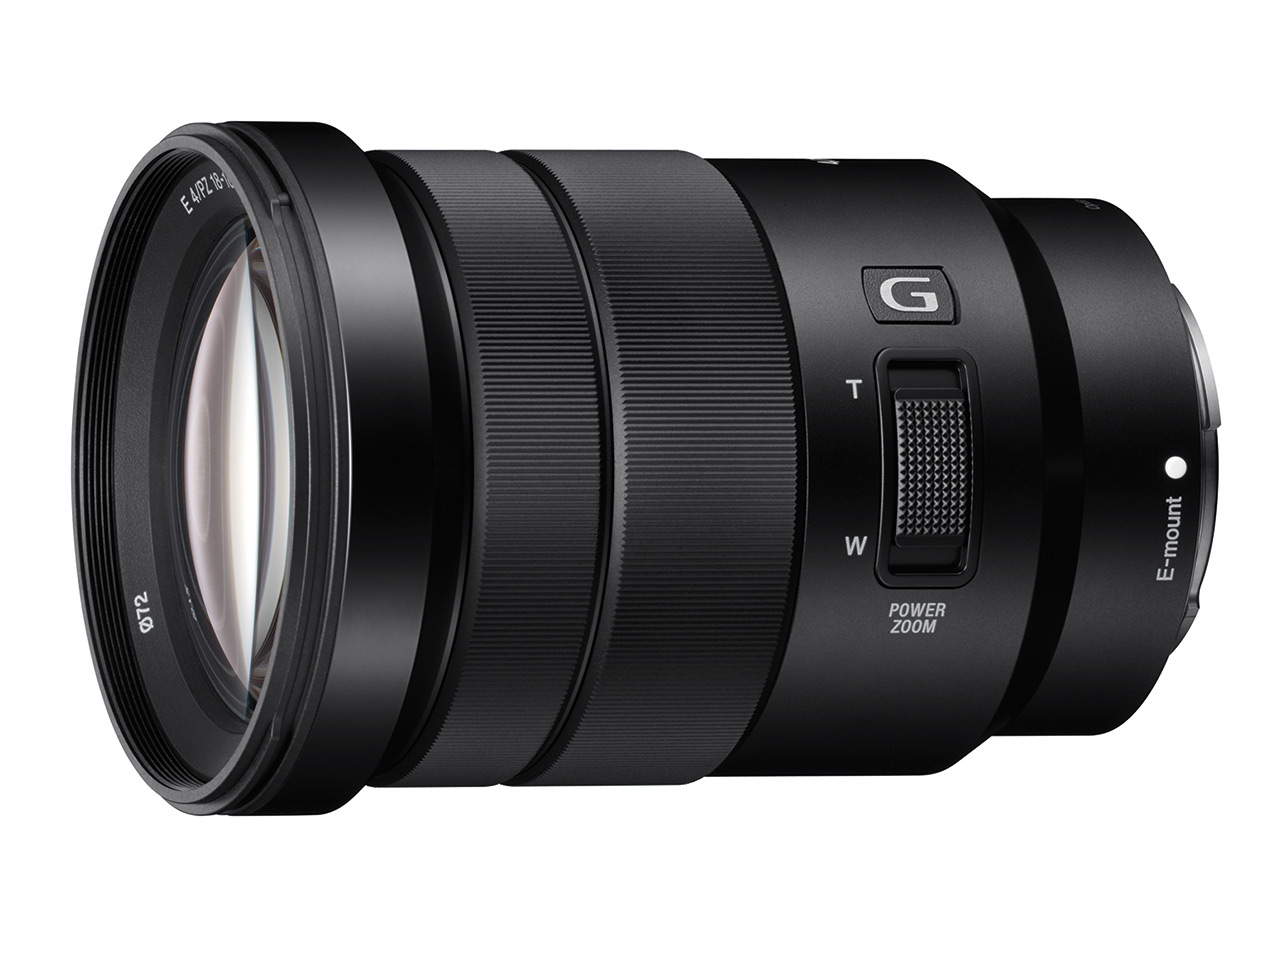 New Sony E-mount power Zoom lens (18-105 f4) for under $600 at DVinfo.net